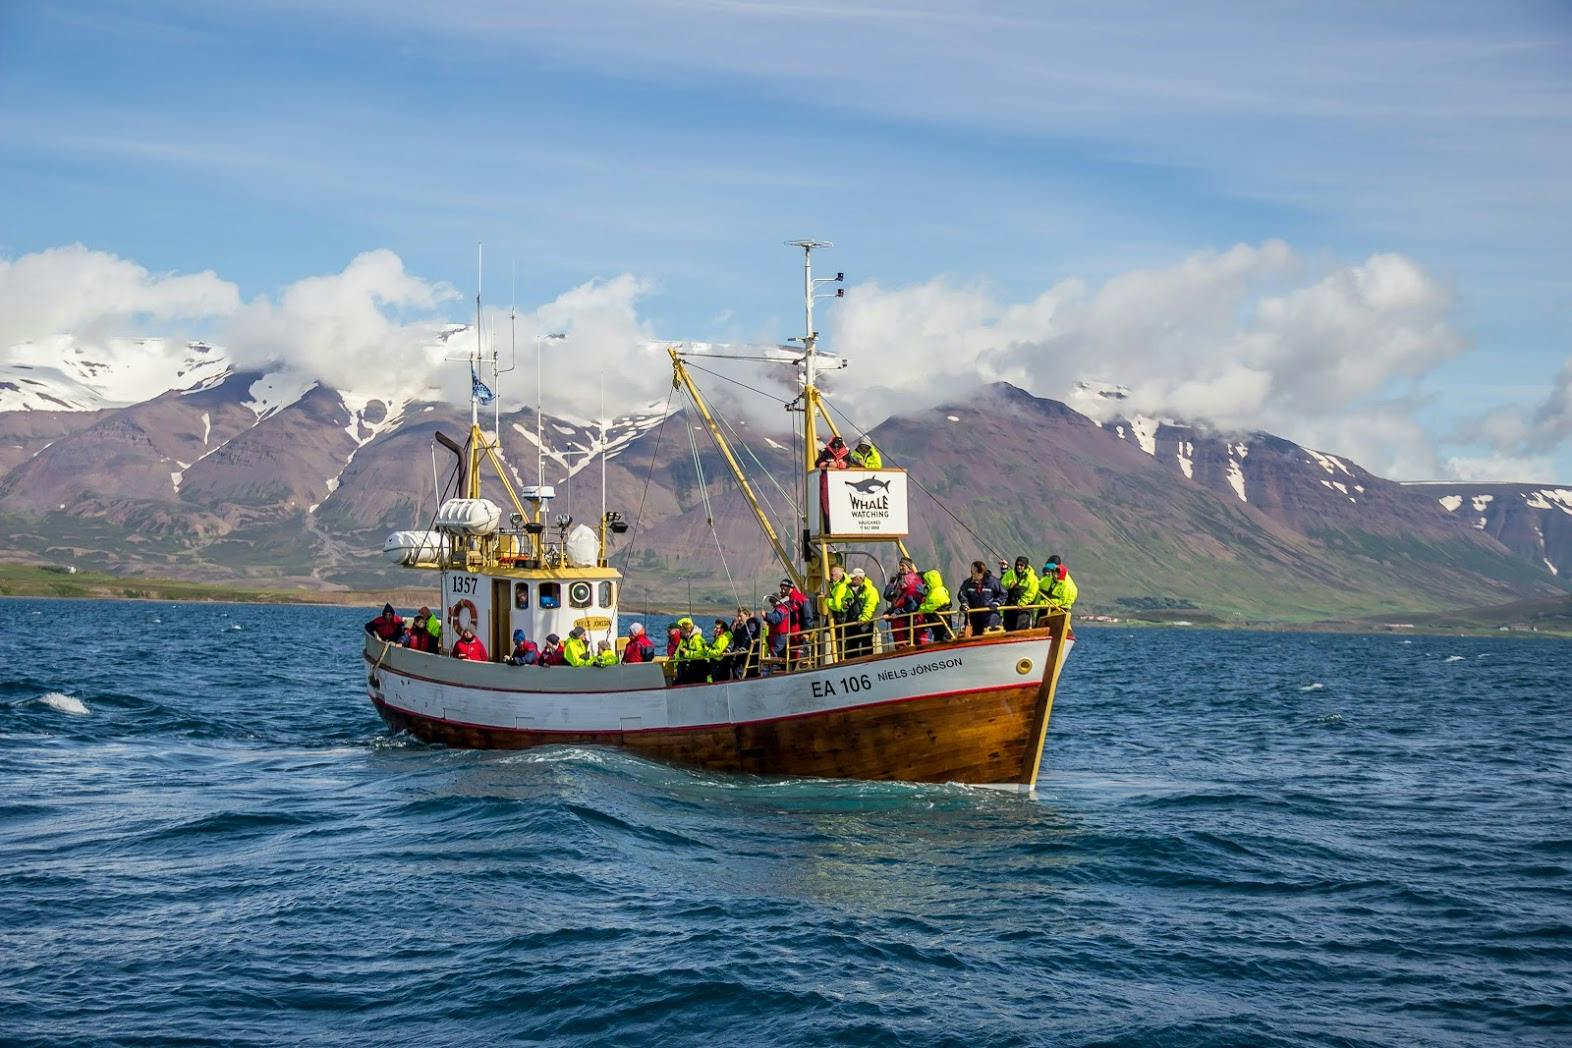 아이슬란드 북부는 고래관측을 즐기기에 좋은 장소로, 최고로 높은 성공률을 자랑하는 곳입니다.